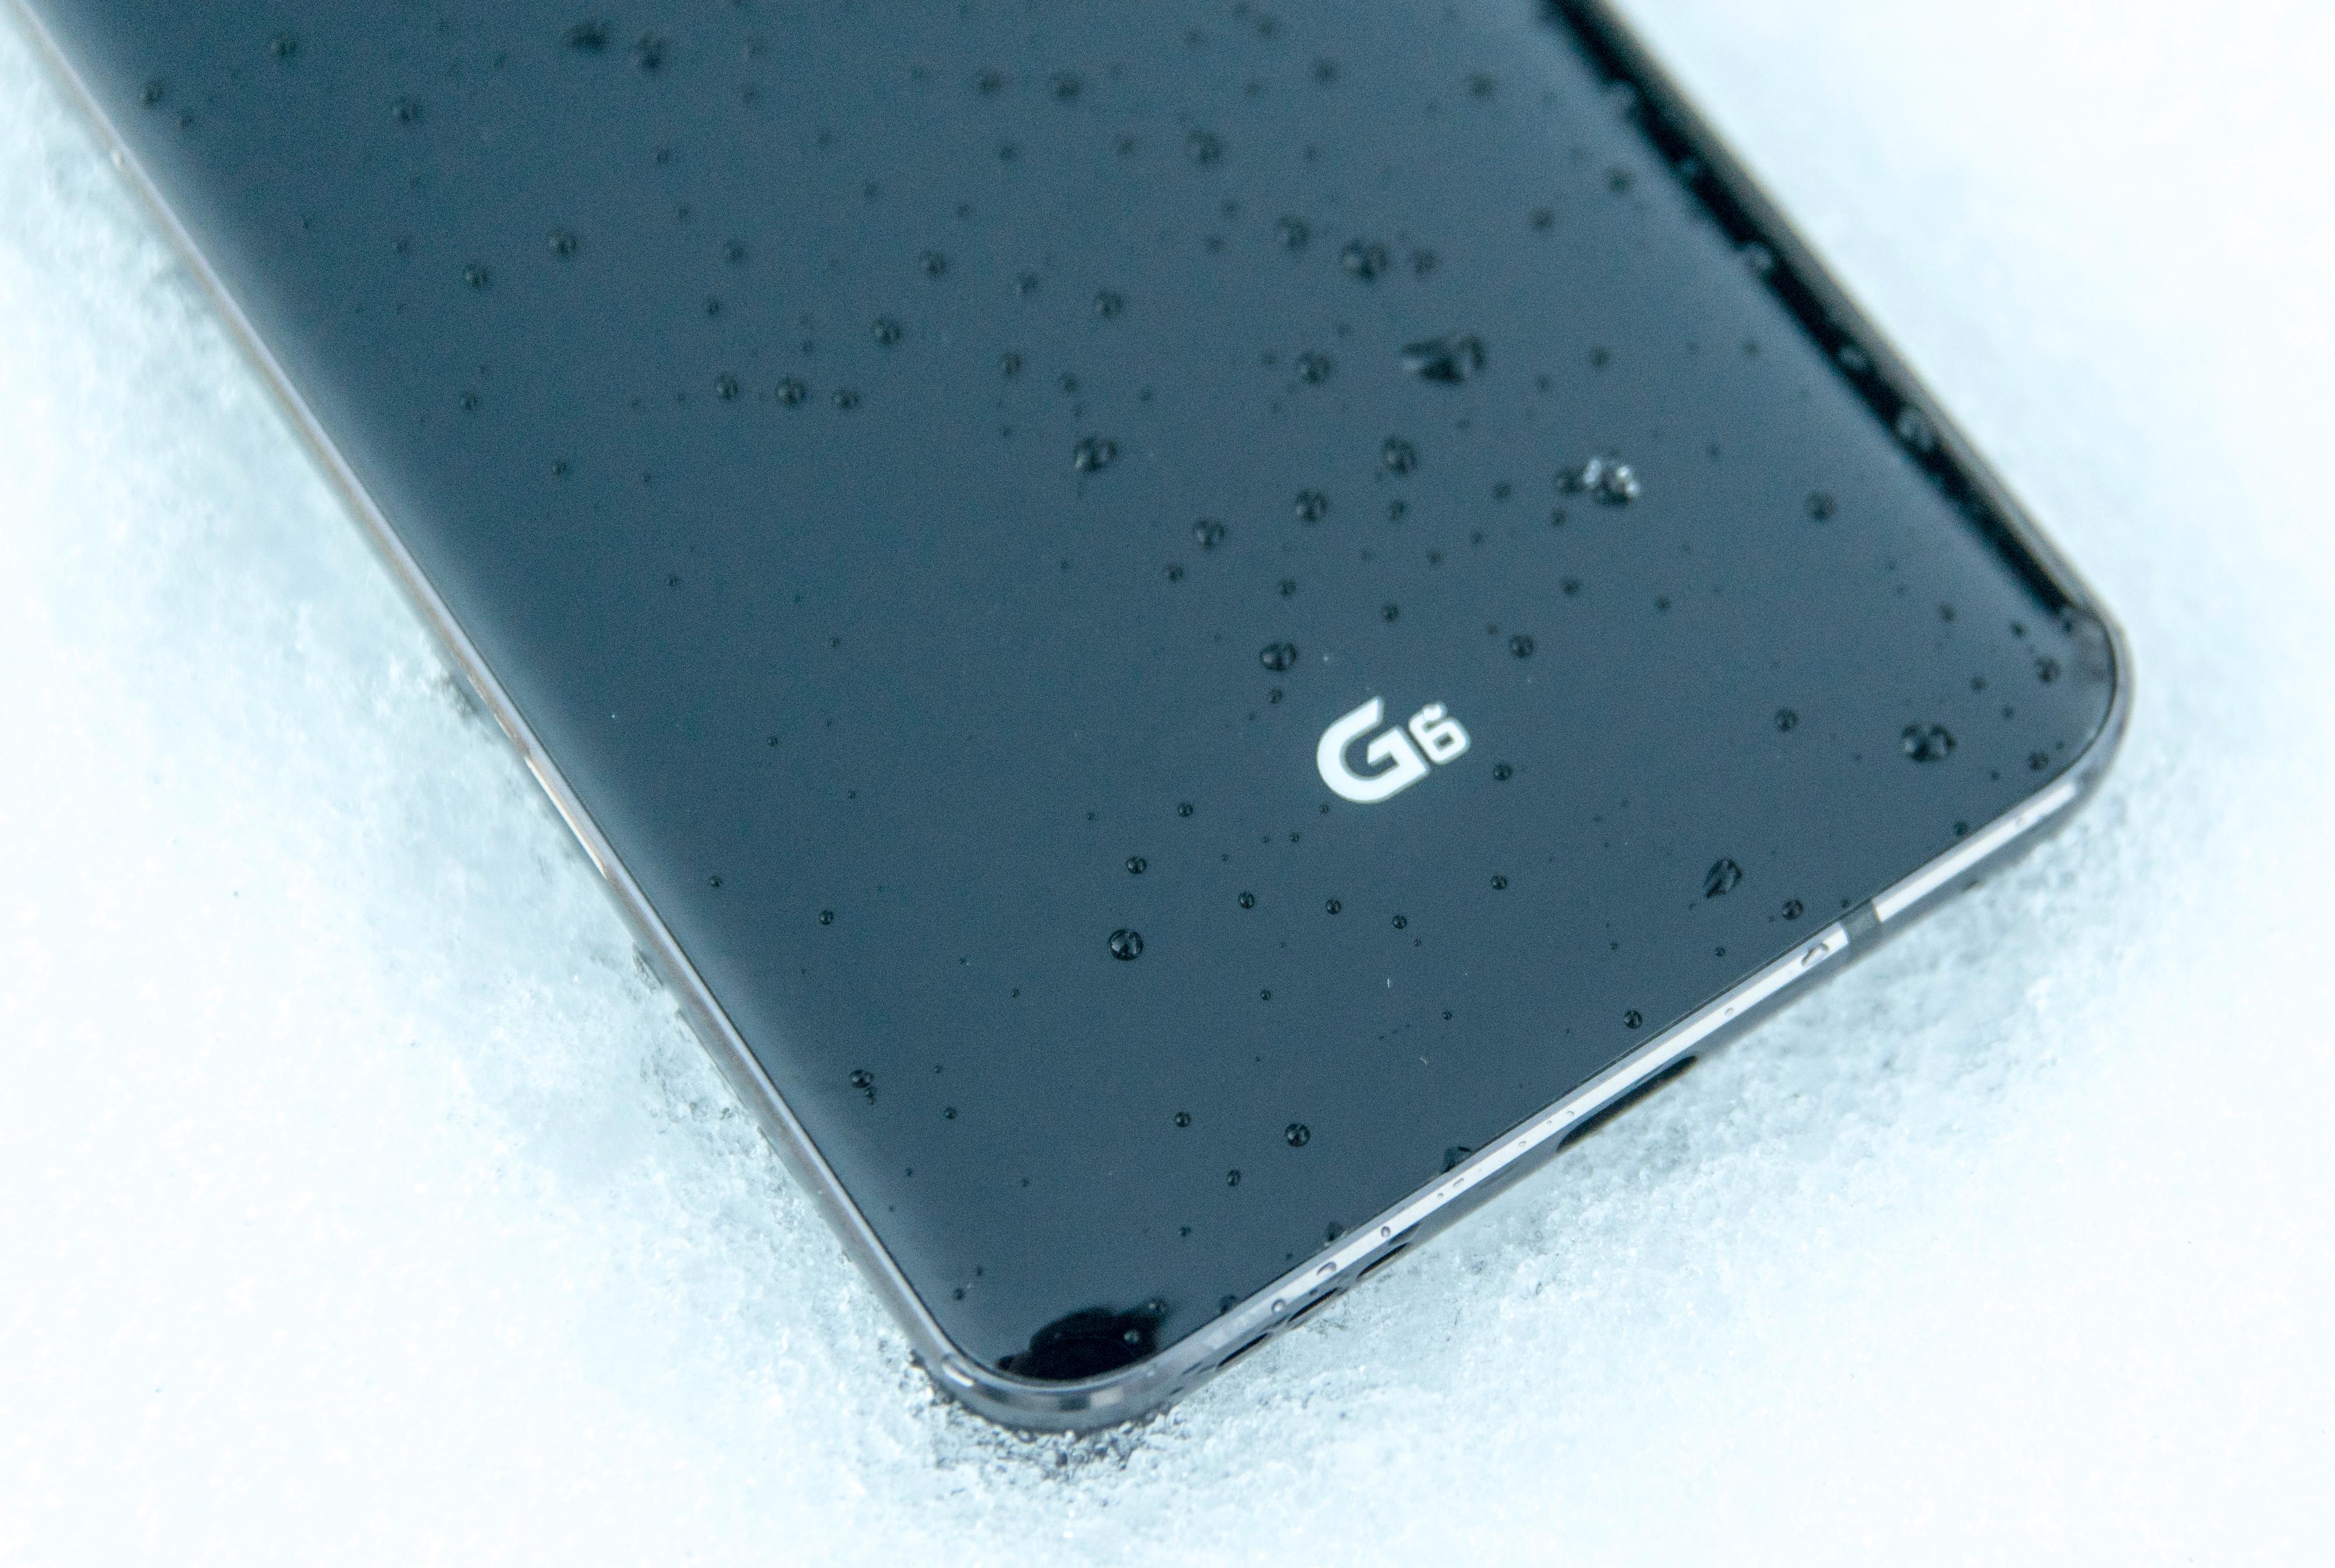 Endelig en vanntett LG-modell. G6 er sertifisert både som IP68 og som MIL-810-G. Sistnevnte betyr at den har gjennomgått støttesting og skal tåle fall fra middels høyder, rundt 1,2 meter. Dette anbefaler vi ingen å prøve, ettersom fall er uforutsigbare uansett. Men G6 har sannsynligvis større sjanse for å overleve enn tidligere modeller i glass.